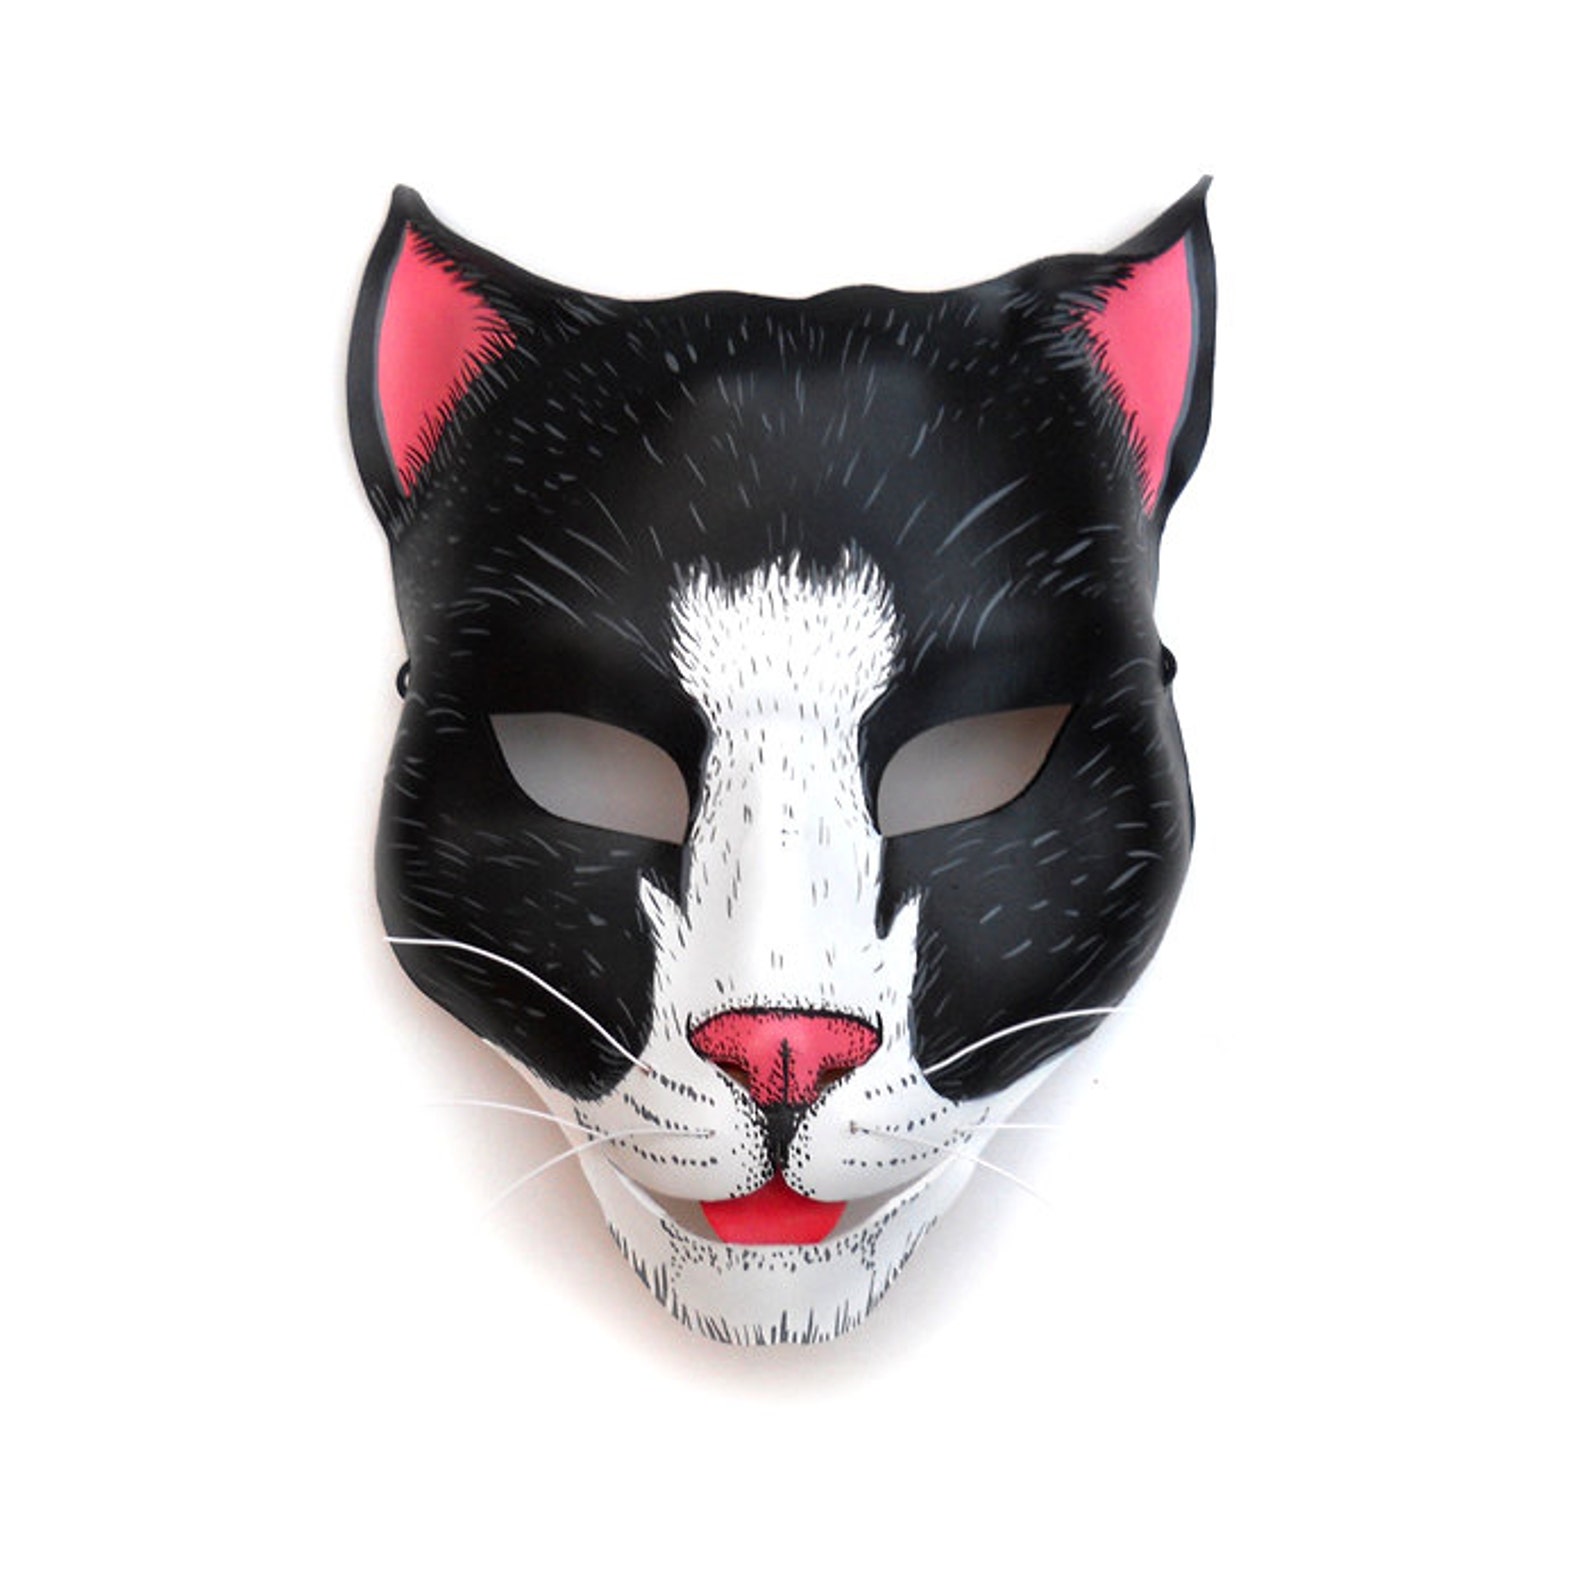 Маска кошки. Карнавальная маска кота. Маска карнавальная «кошечка». Реалистичная маска кота. Как сделать маску кошки своими руками